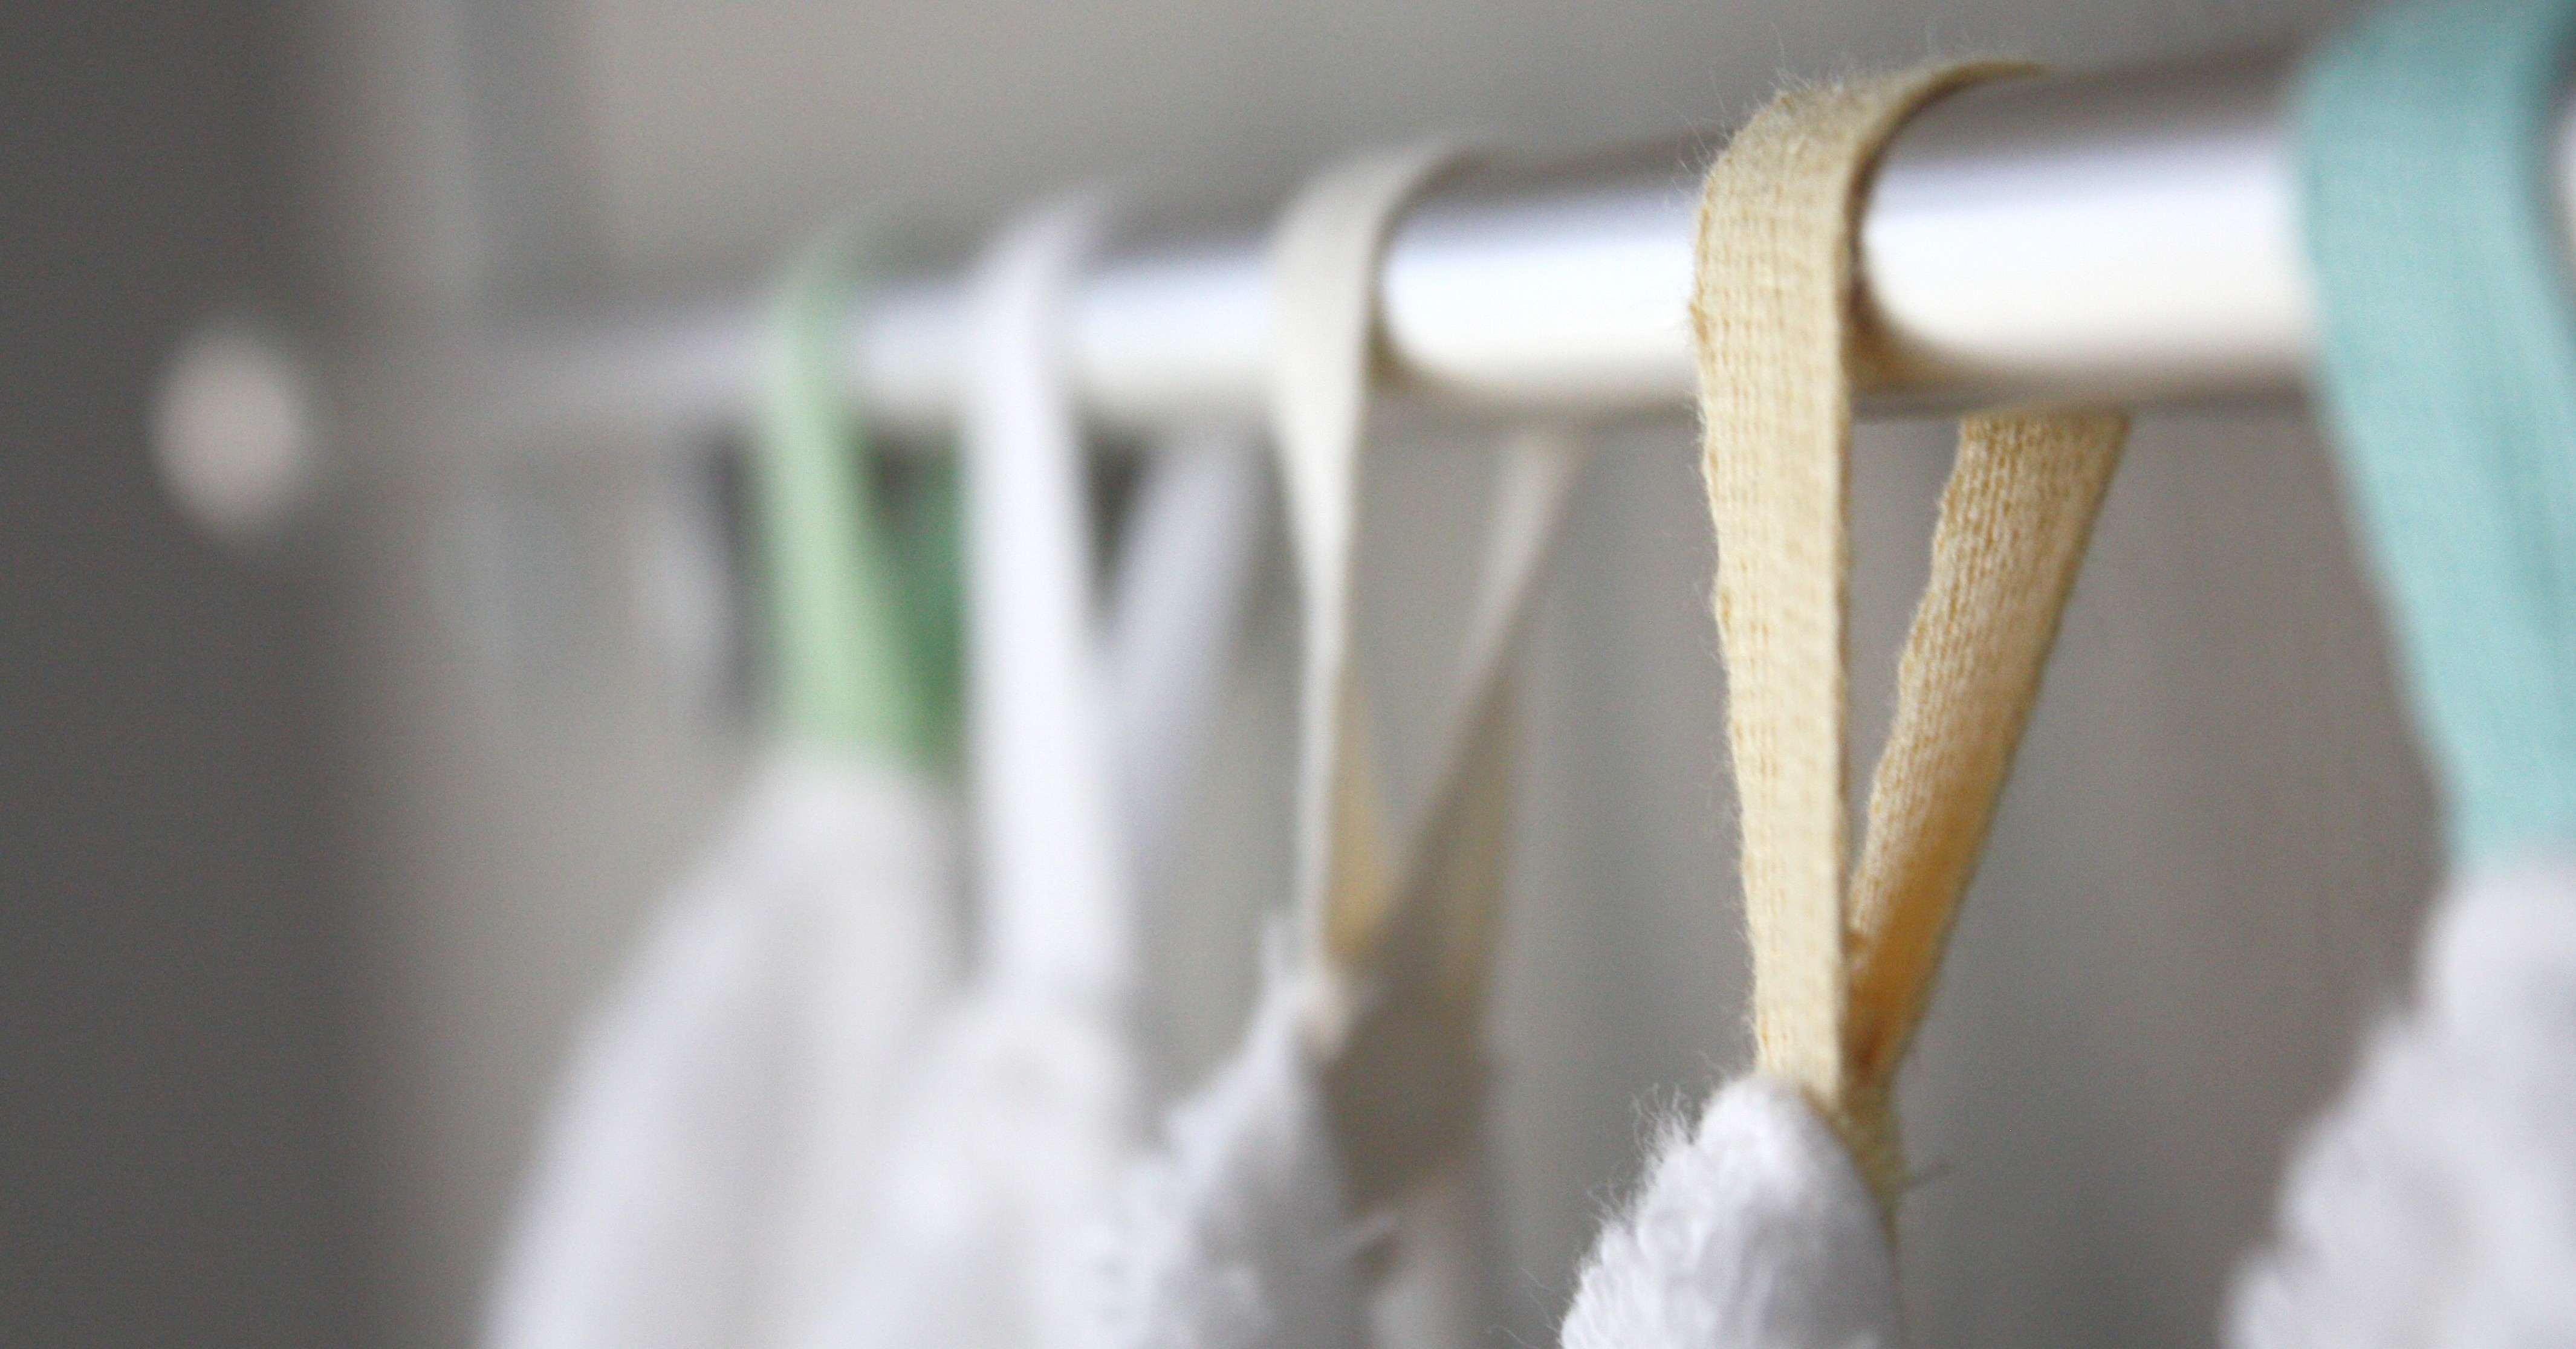 Making Towel Hanging Loops…